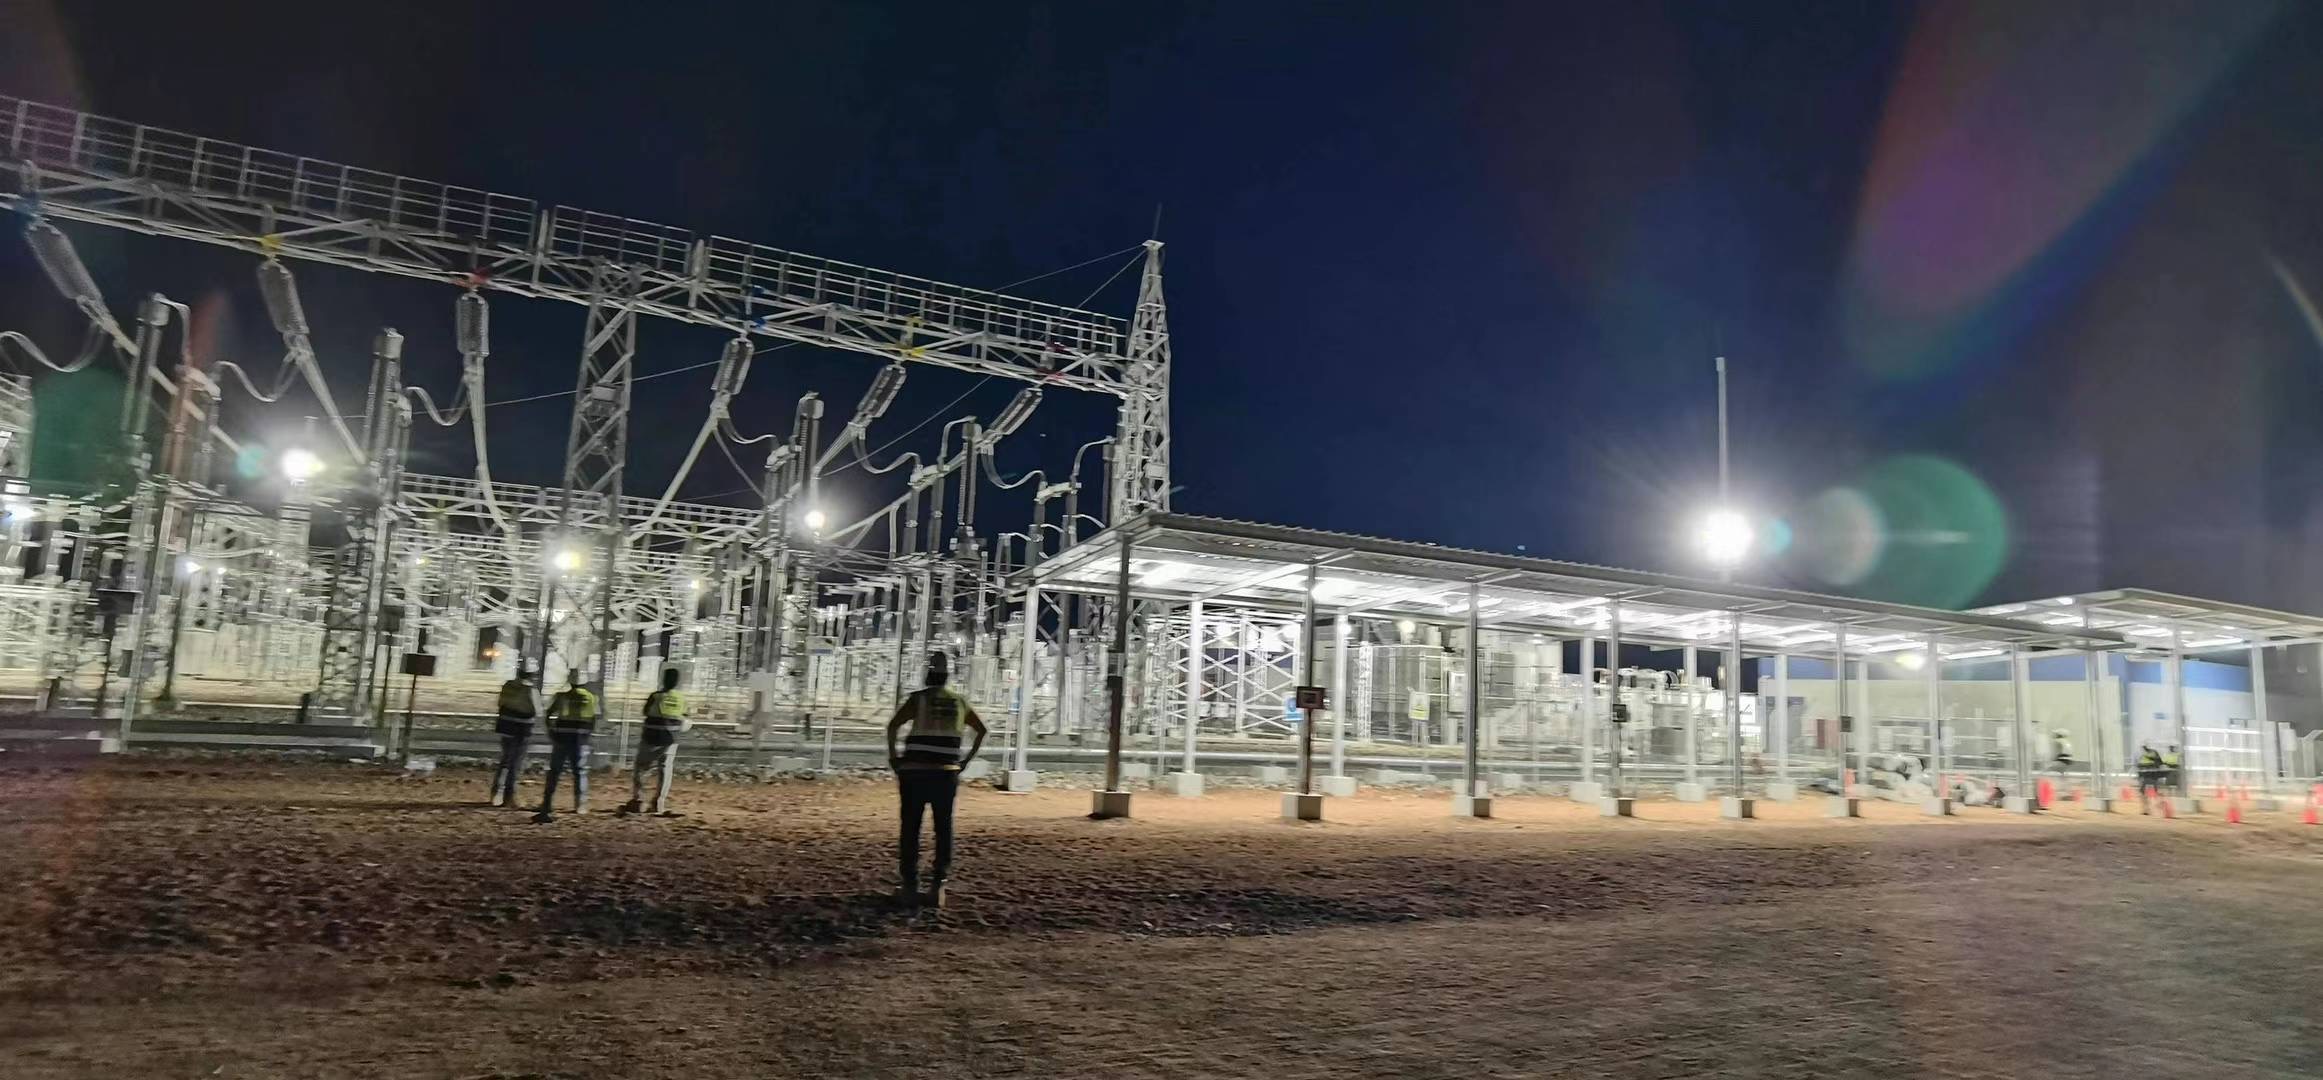 埃及康翁波200兆瓦光伏电站项目220千伏升压站倒送电成功